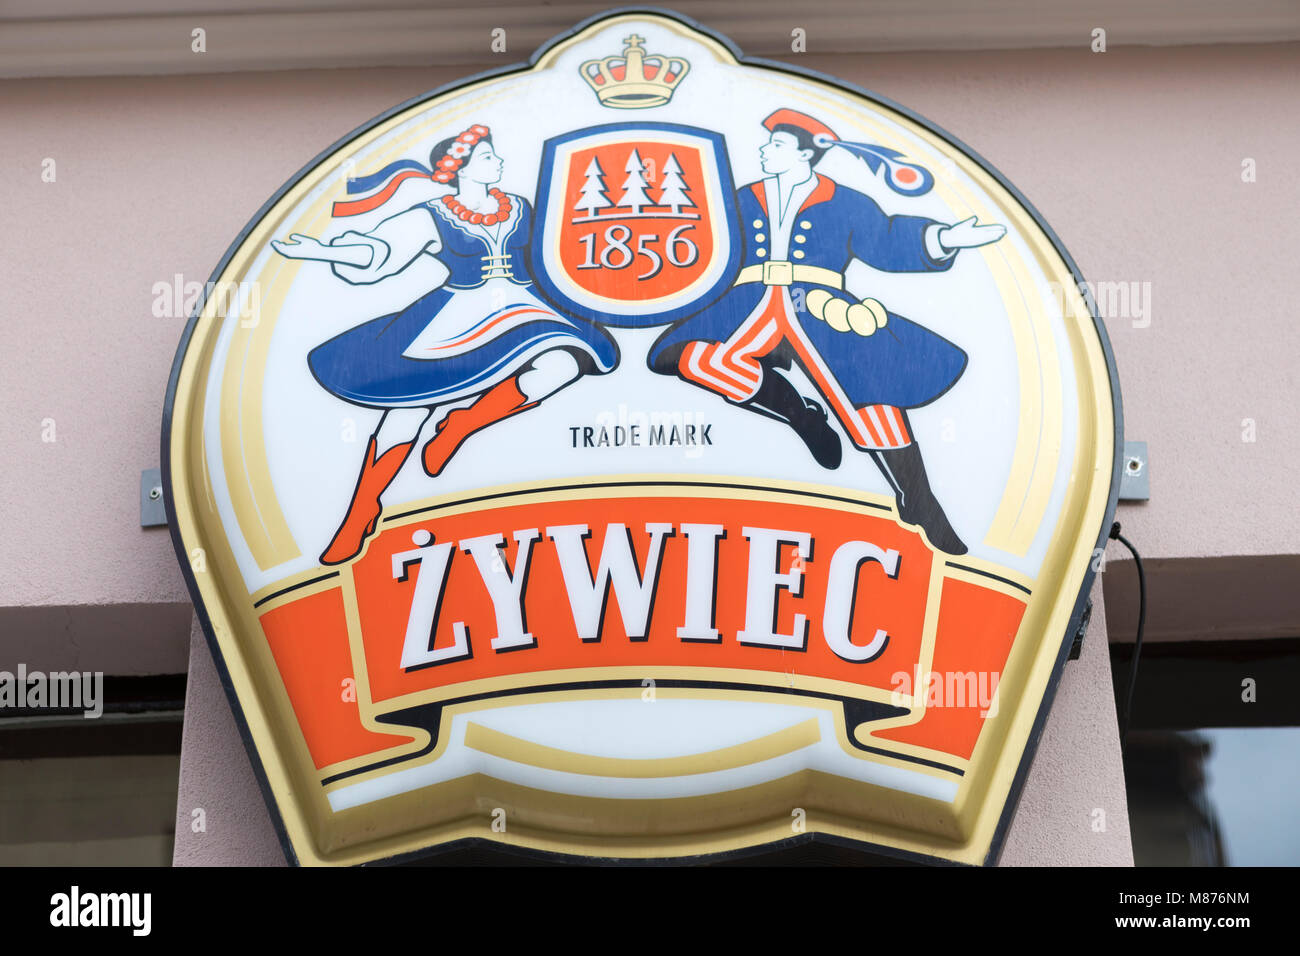 Polonia, Malbork, segnaletica per birra polacca. Foto Stock